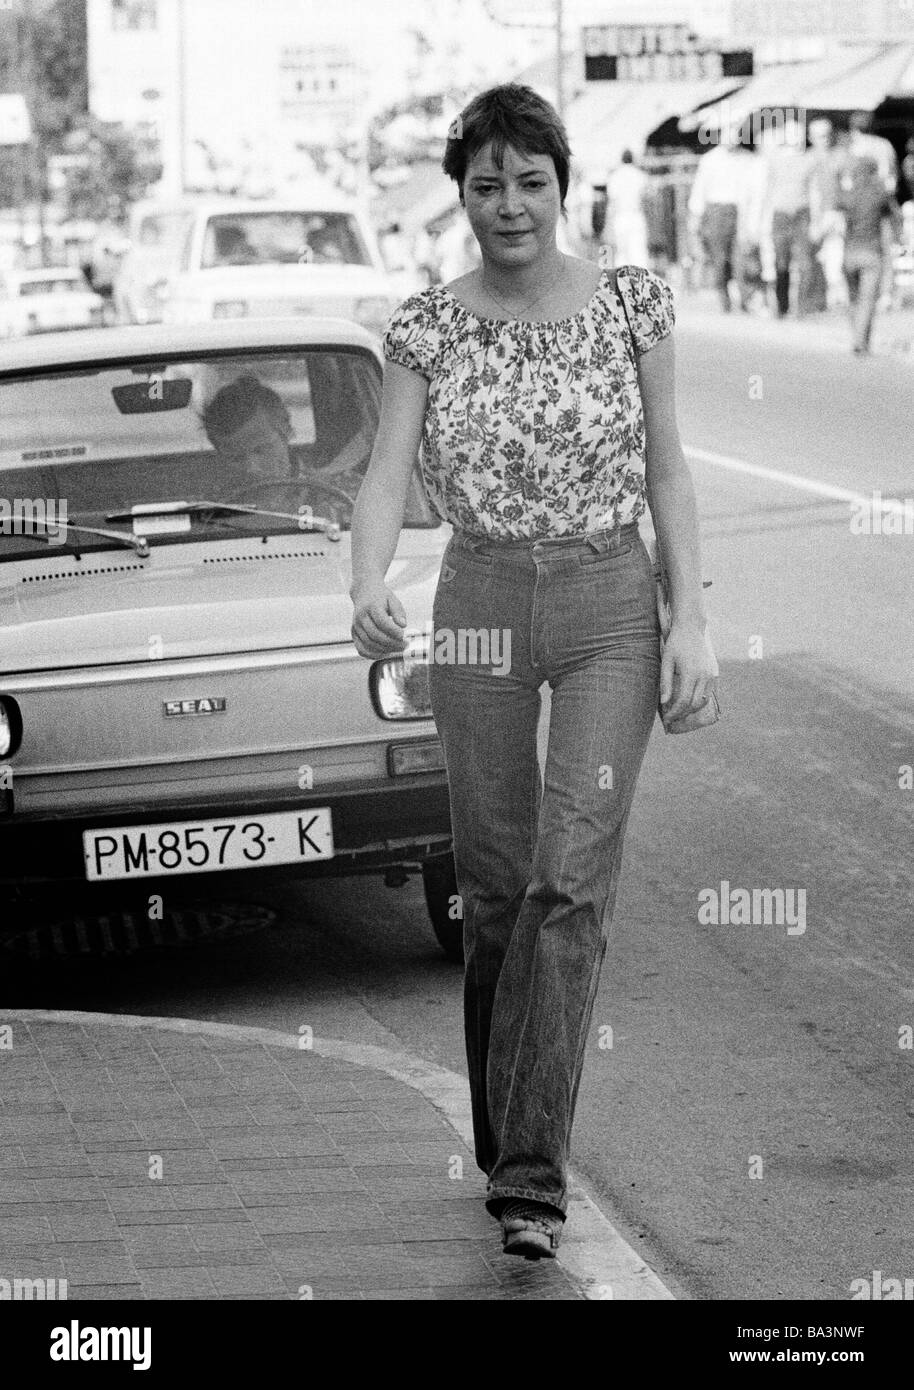 Negli anni settanta, foto in bianco e nero, persone, giovane donna sul marciapiede, camicetta, jeans pantaloni, parcheggio auto, di età compresa tra 22 a 28 anni, Isole Baleari Spagna, Mallorca, Palma de Maiorca Foto Stock